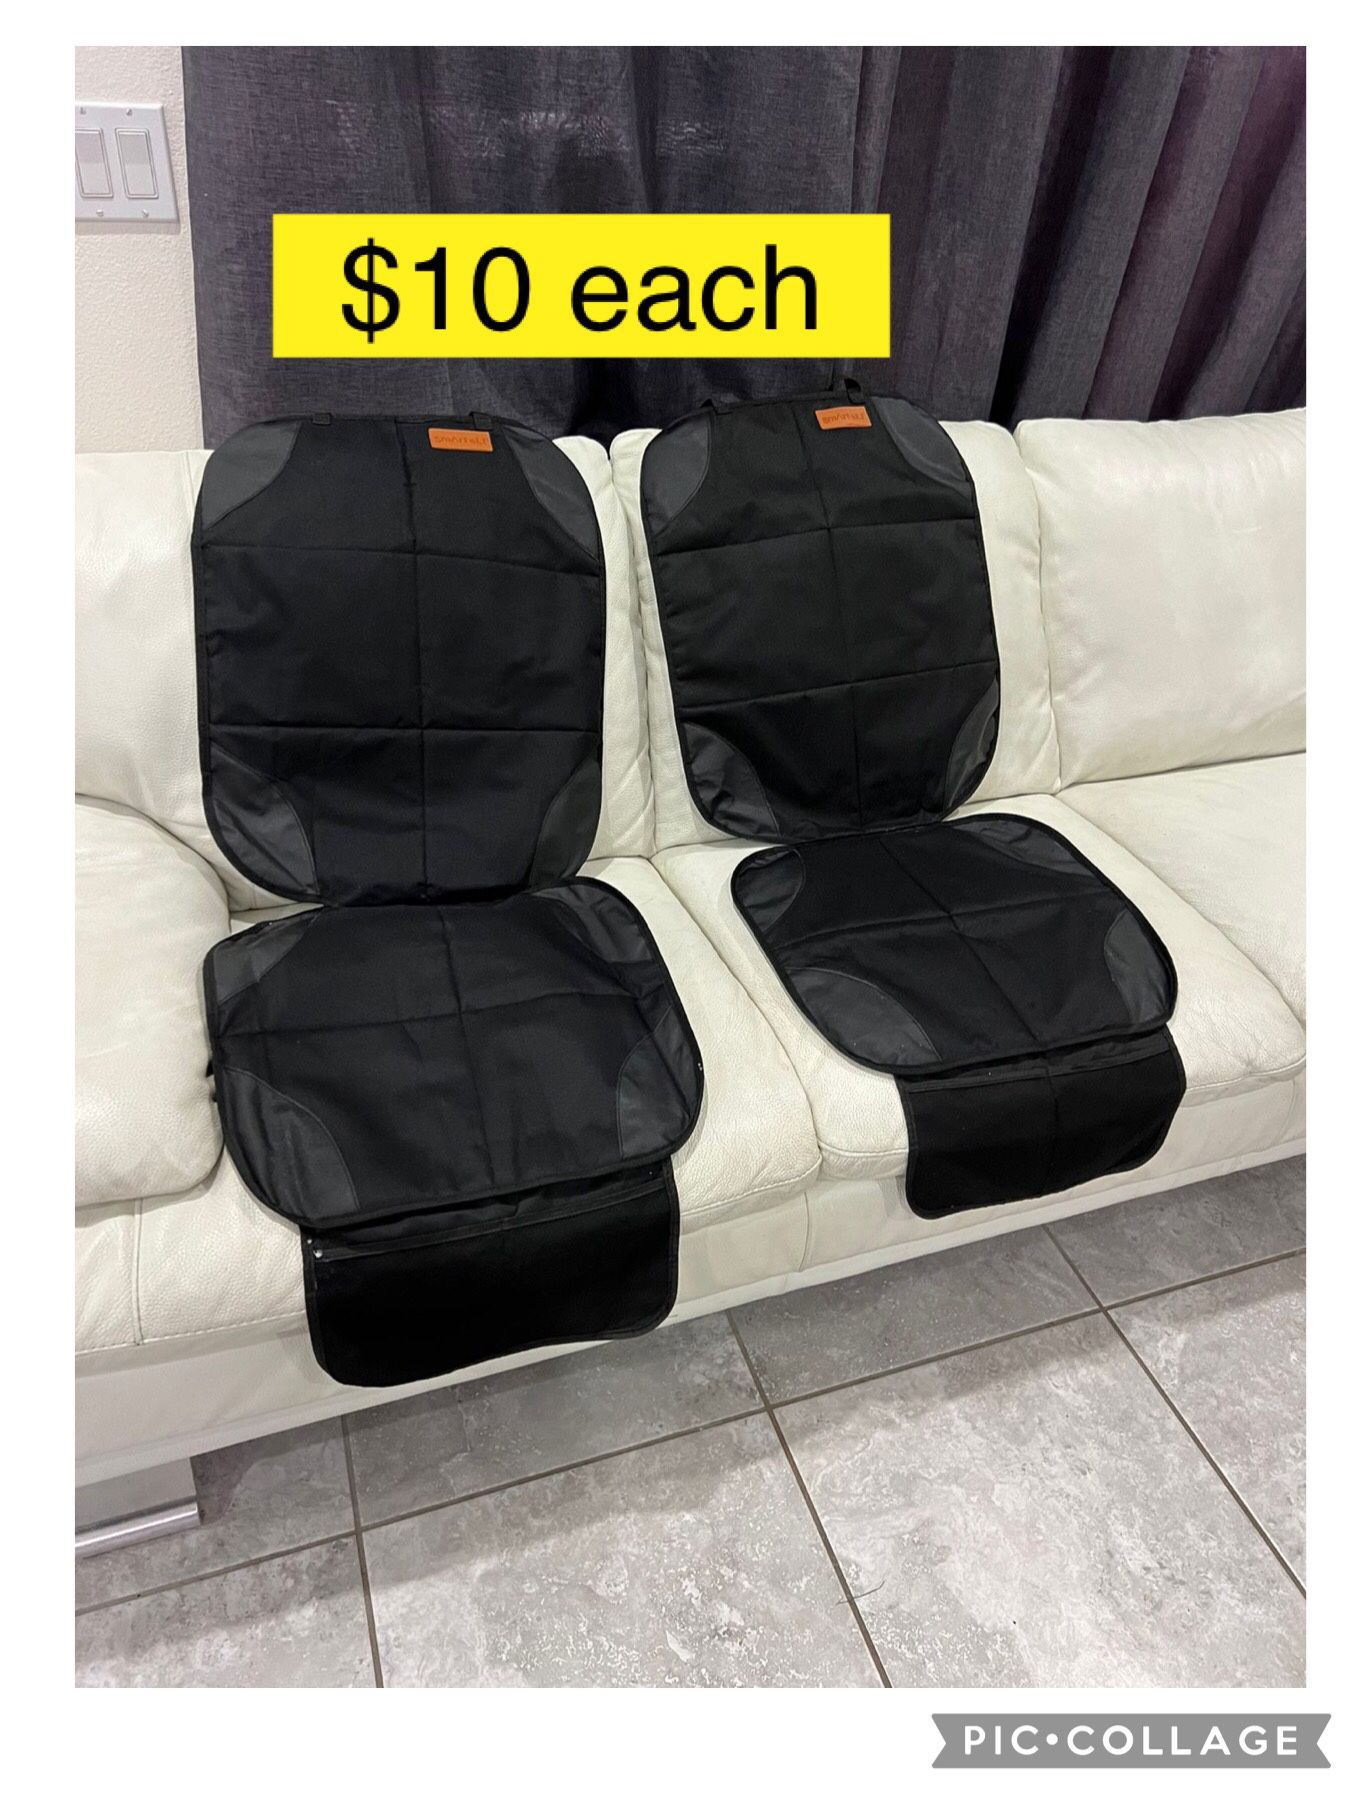 Cover protector car seat $10 each / Protectores de asientos de sillas de carro niños $10 cada uno